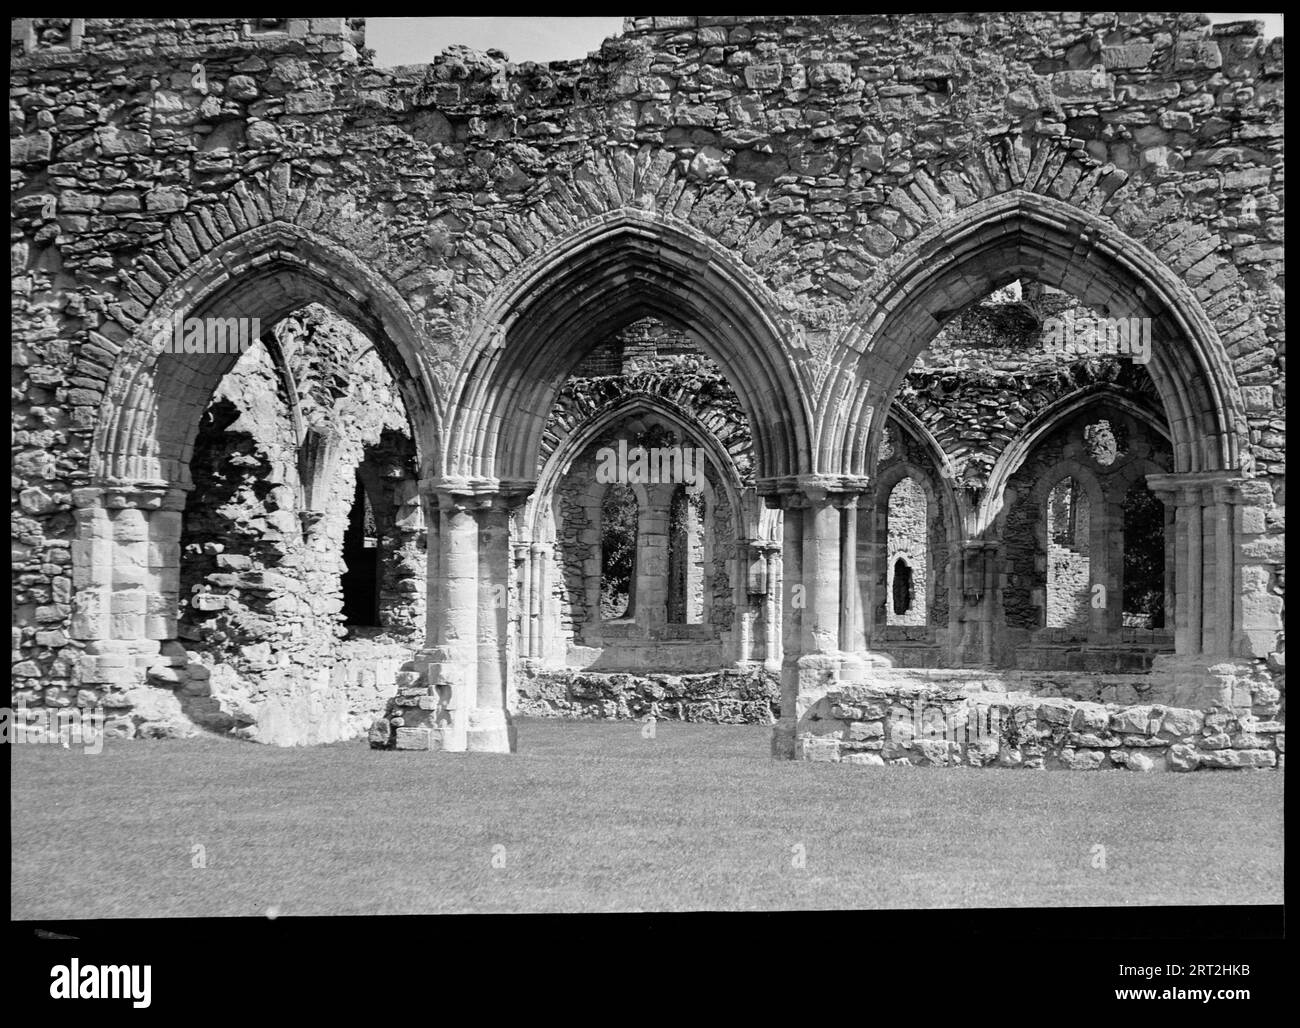 Fountains Abbey, Harrogate, North Yorkshire, 1940-1949. Una vista delle rovine dell'Abbazia di Fountains vista attraverso un trittico di archi in primo piano. Gli archi sono disposti in pietra affrescata che è danneggiata in cima e rivelano bassi muri di pietra direttamente dietro di loro. Più avanti sullo sfondo ci sono più file di archi sia paralleli che perpendicolari alla parte anteriore. L'abbazia fu fondata nel 1132 dai monaci cistercensi ed è una delle più belle abbazie conservate. L'edificio principale ebbe luogo tra il 1170-1247 e la fine del XV secolo e l'inizio del XVI secolo. L'abbazia aveva molti proprietari dopo lo scioglimento ed è attualmente di proprietà Foto Stock